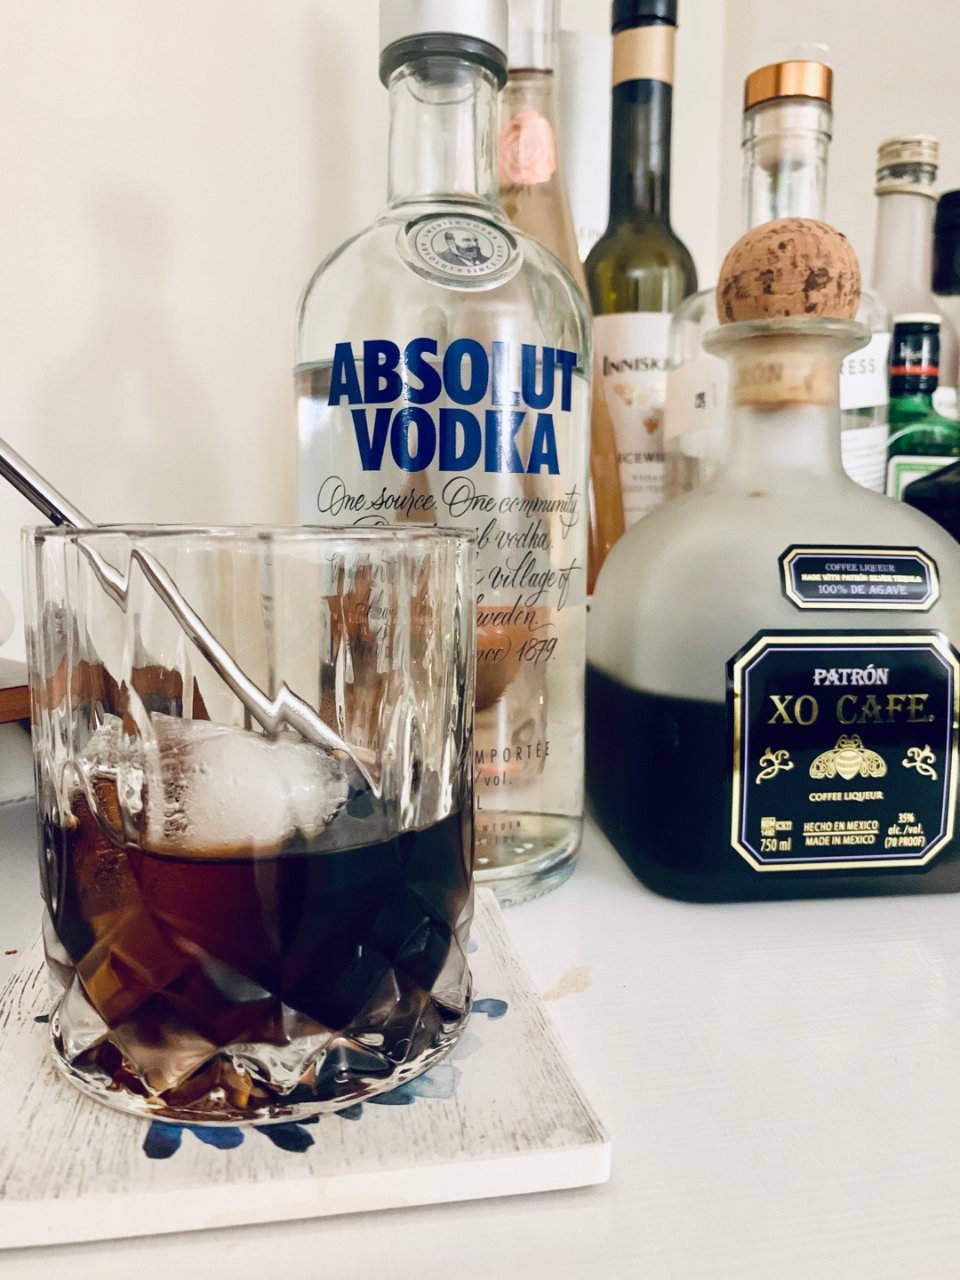 咖啡利口酒,ABSOLUT VODKA 绝对伏特加,Black Russian